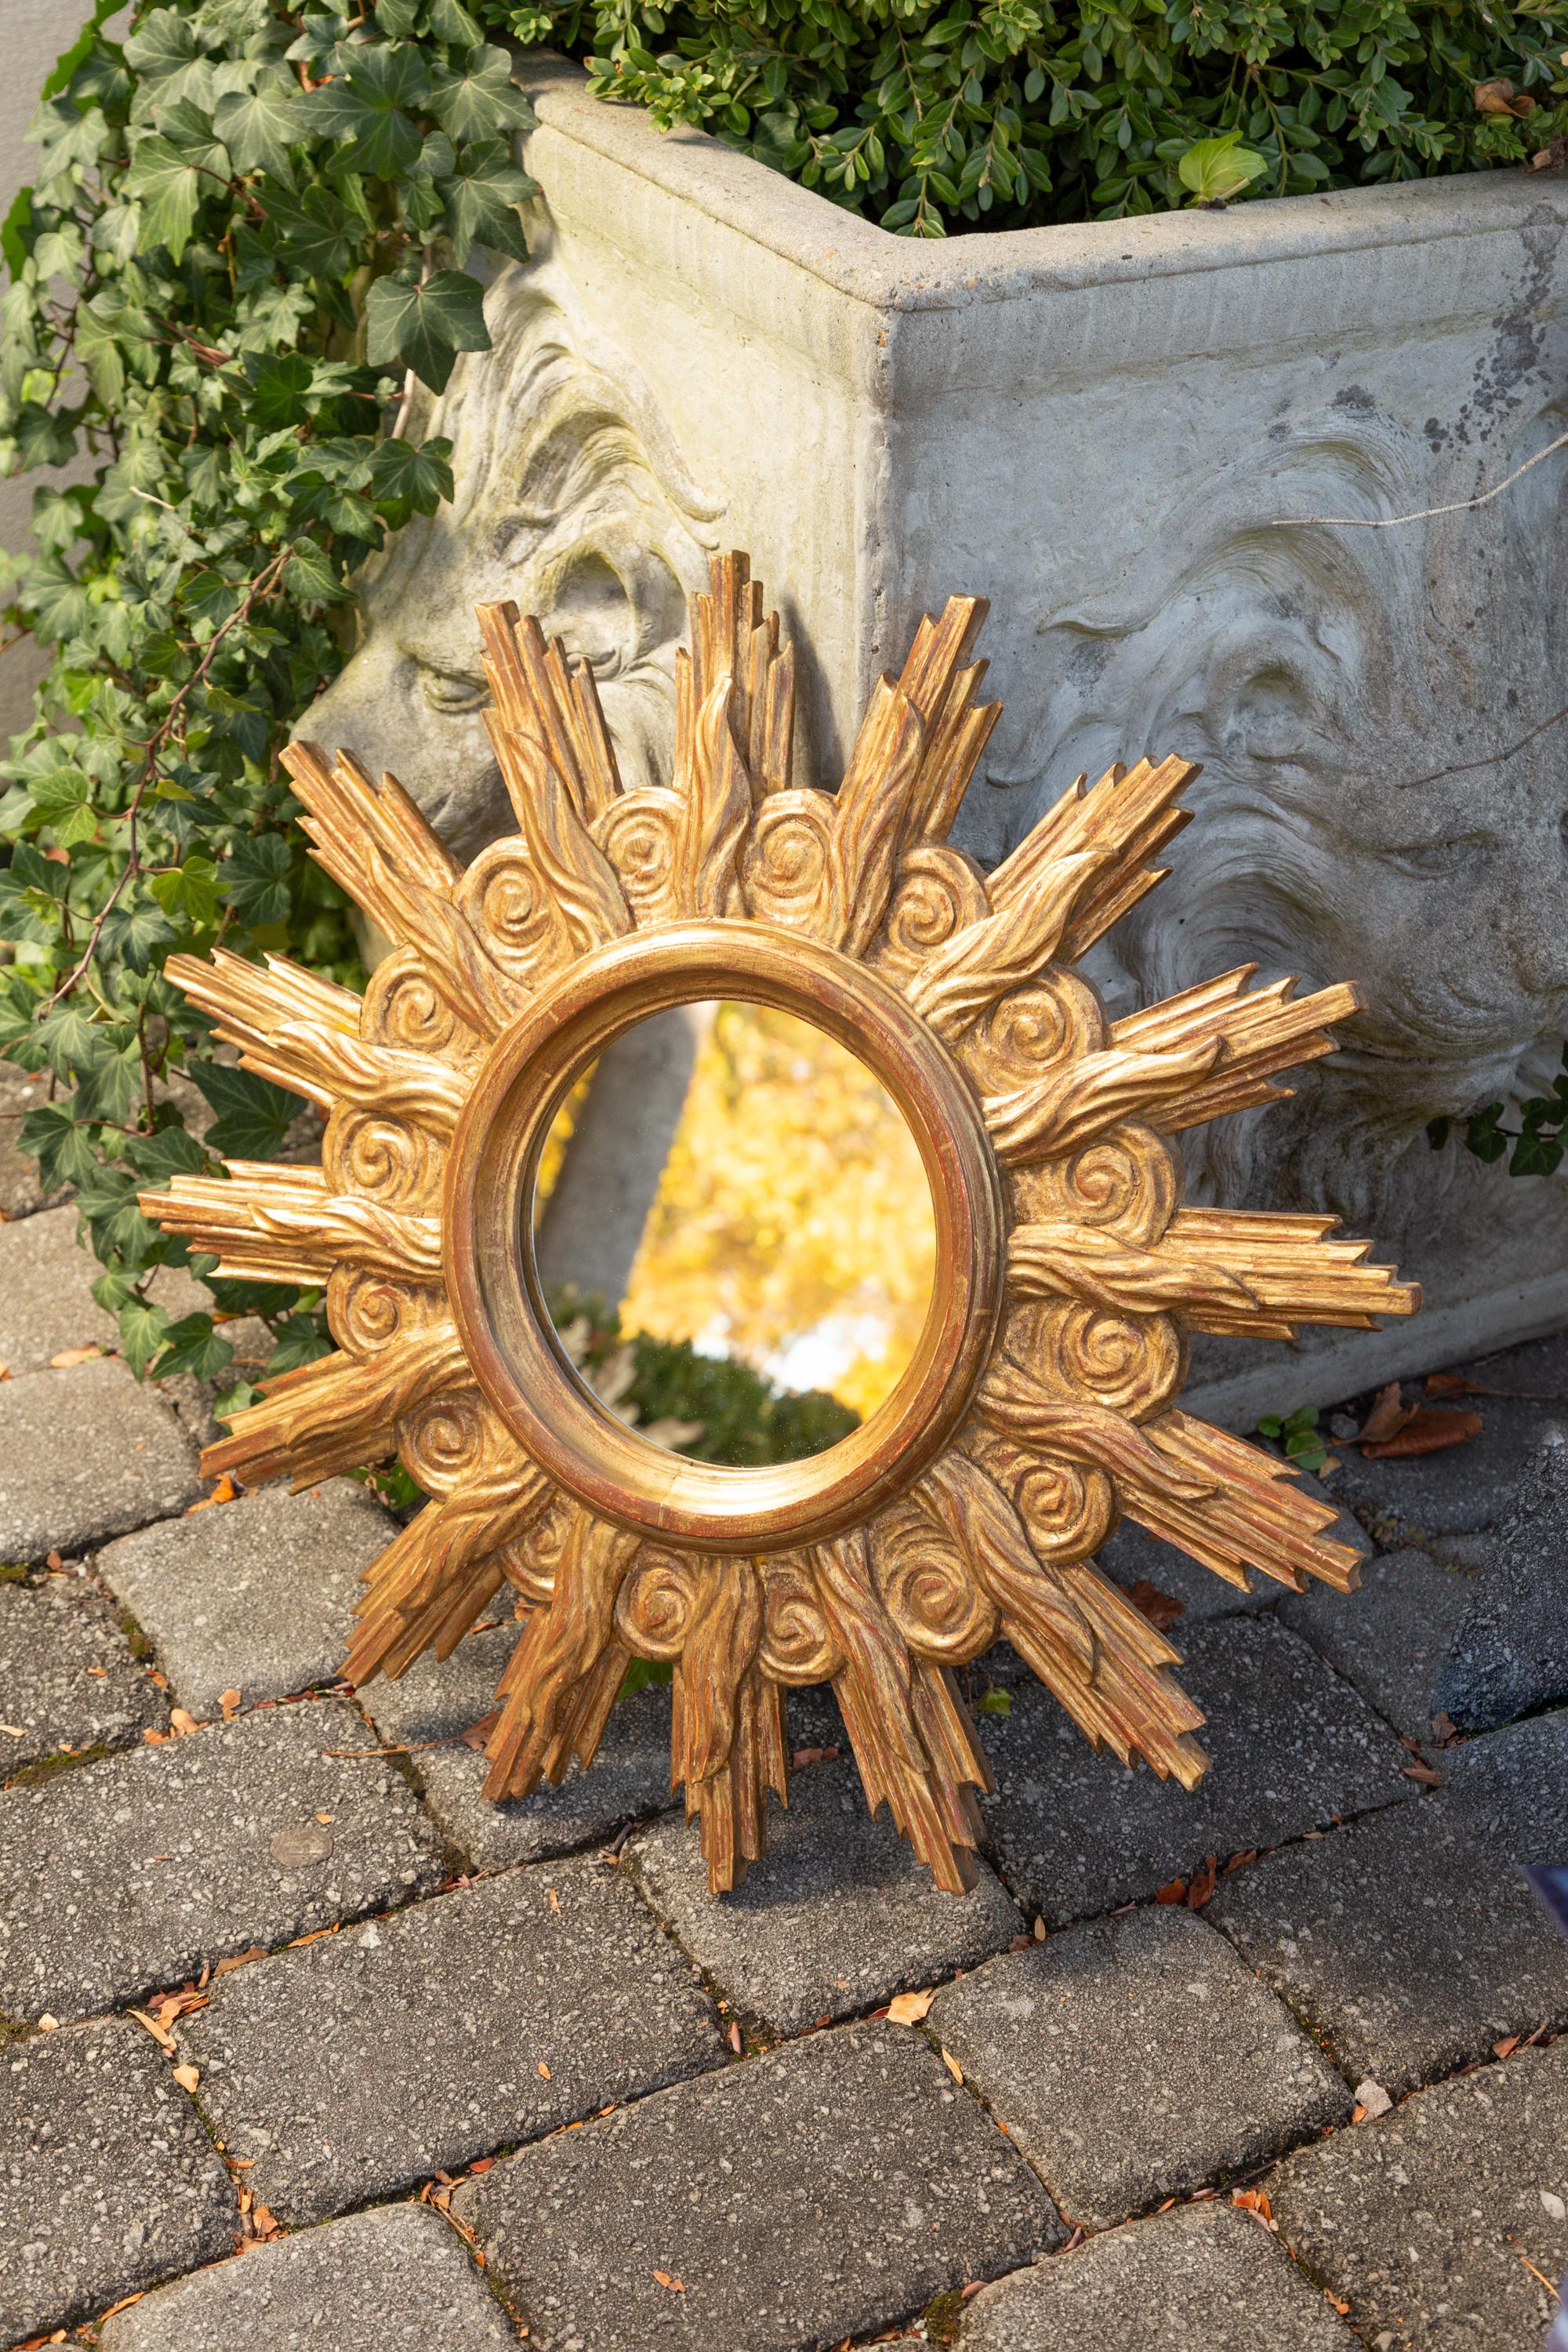 euromarchi italy mirror